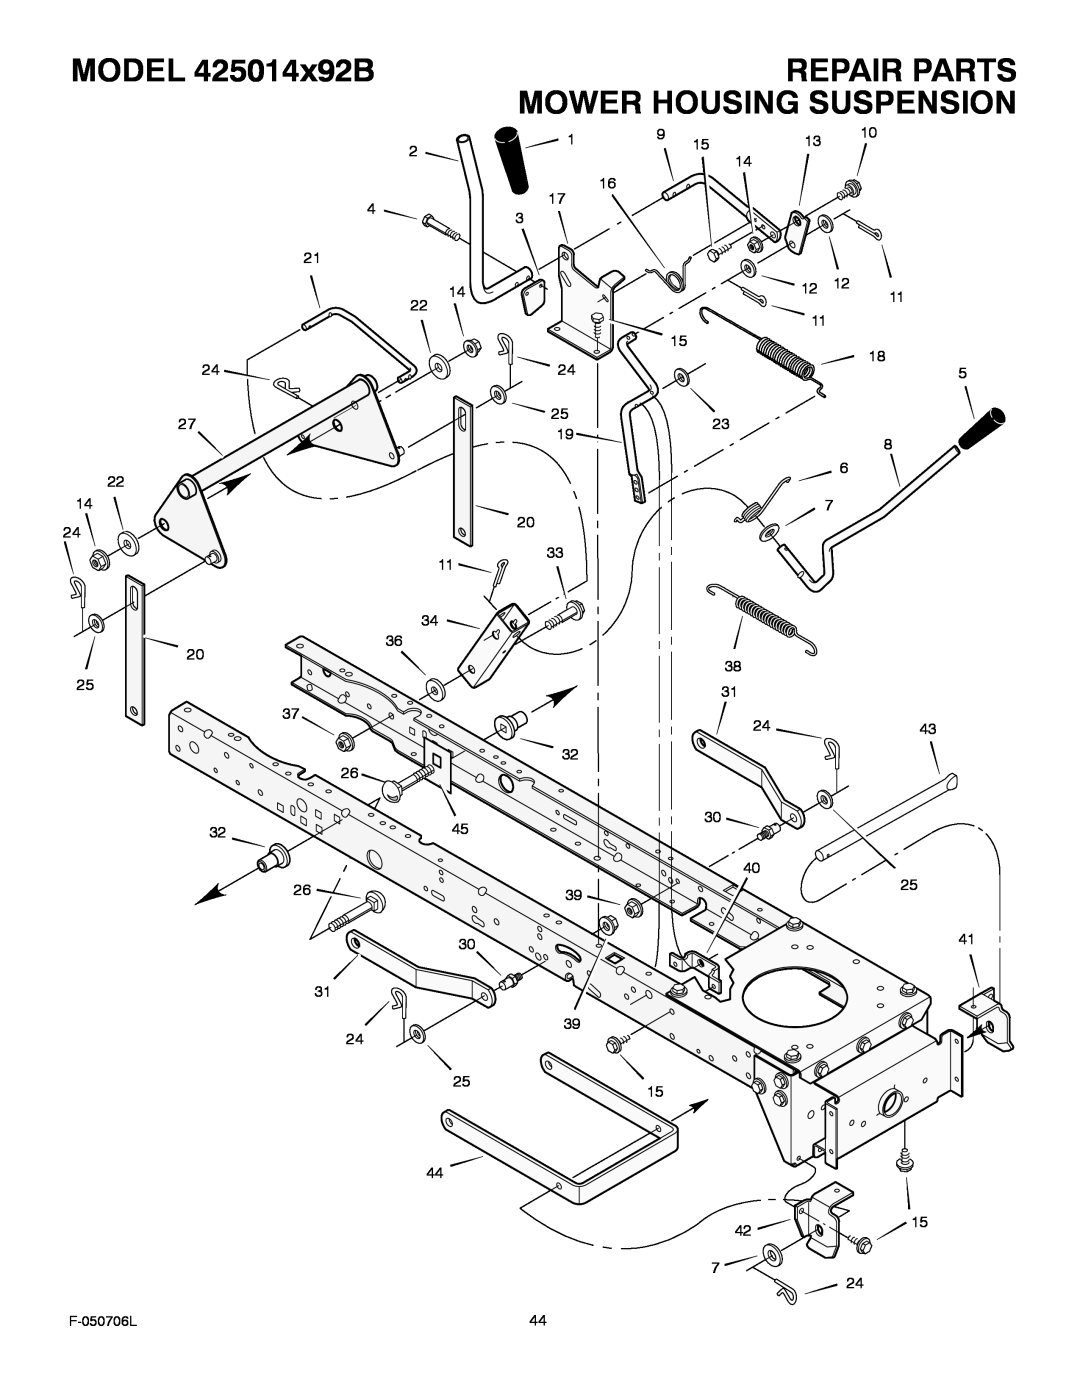 Murray manual Repair Parts Mower Housing Suspension, MODEL 425014x92B, F-050706L 